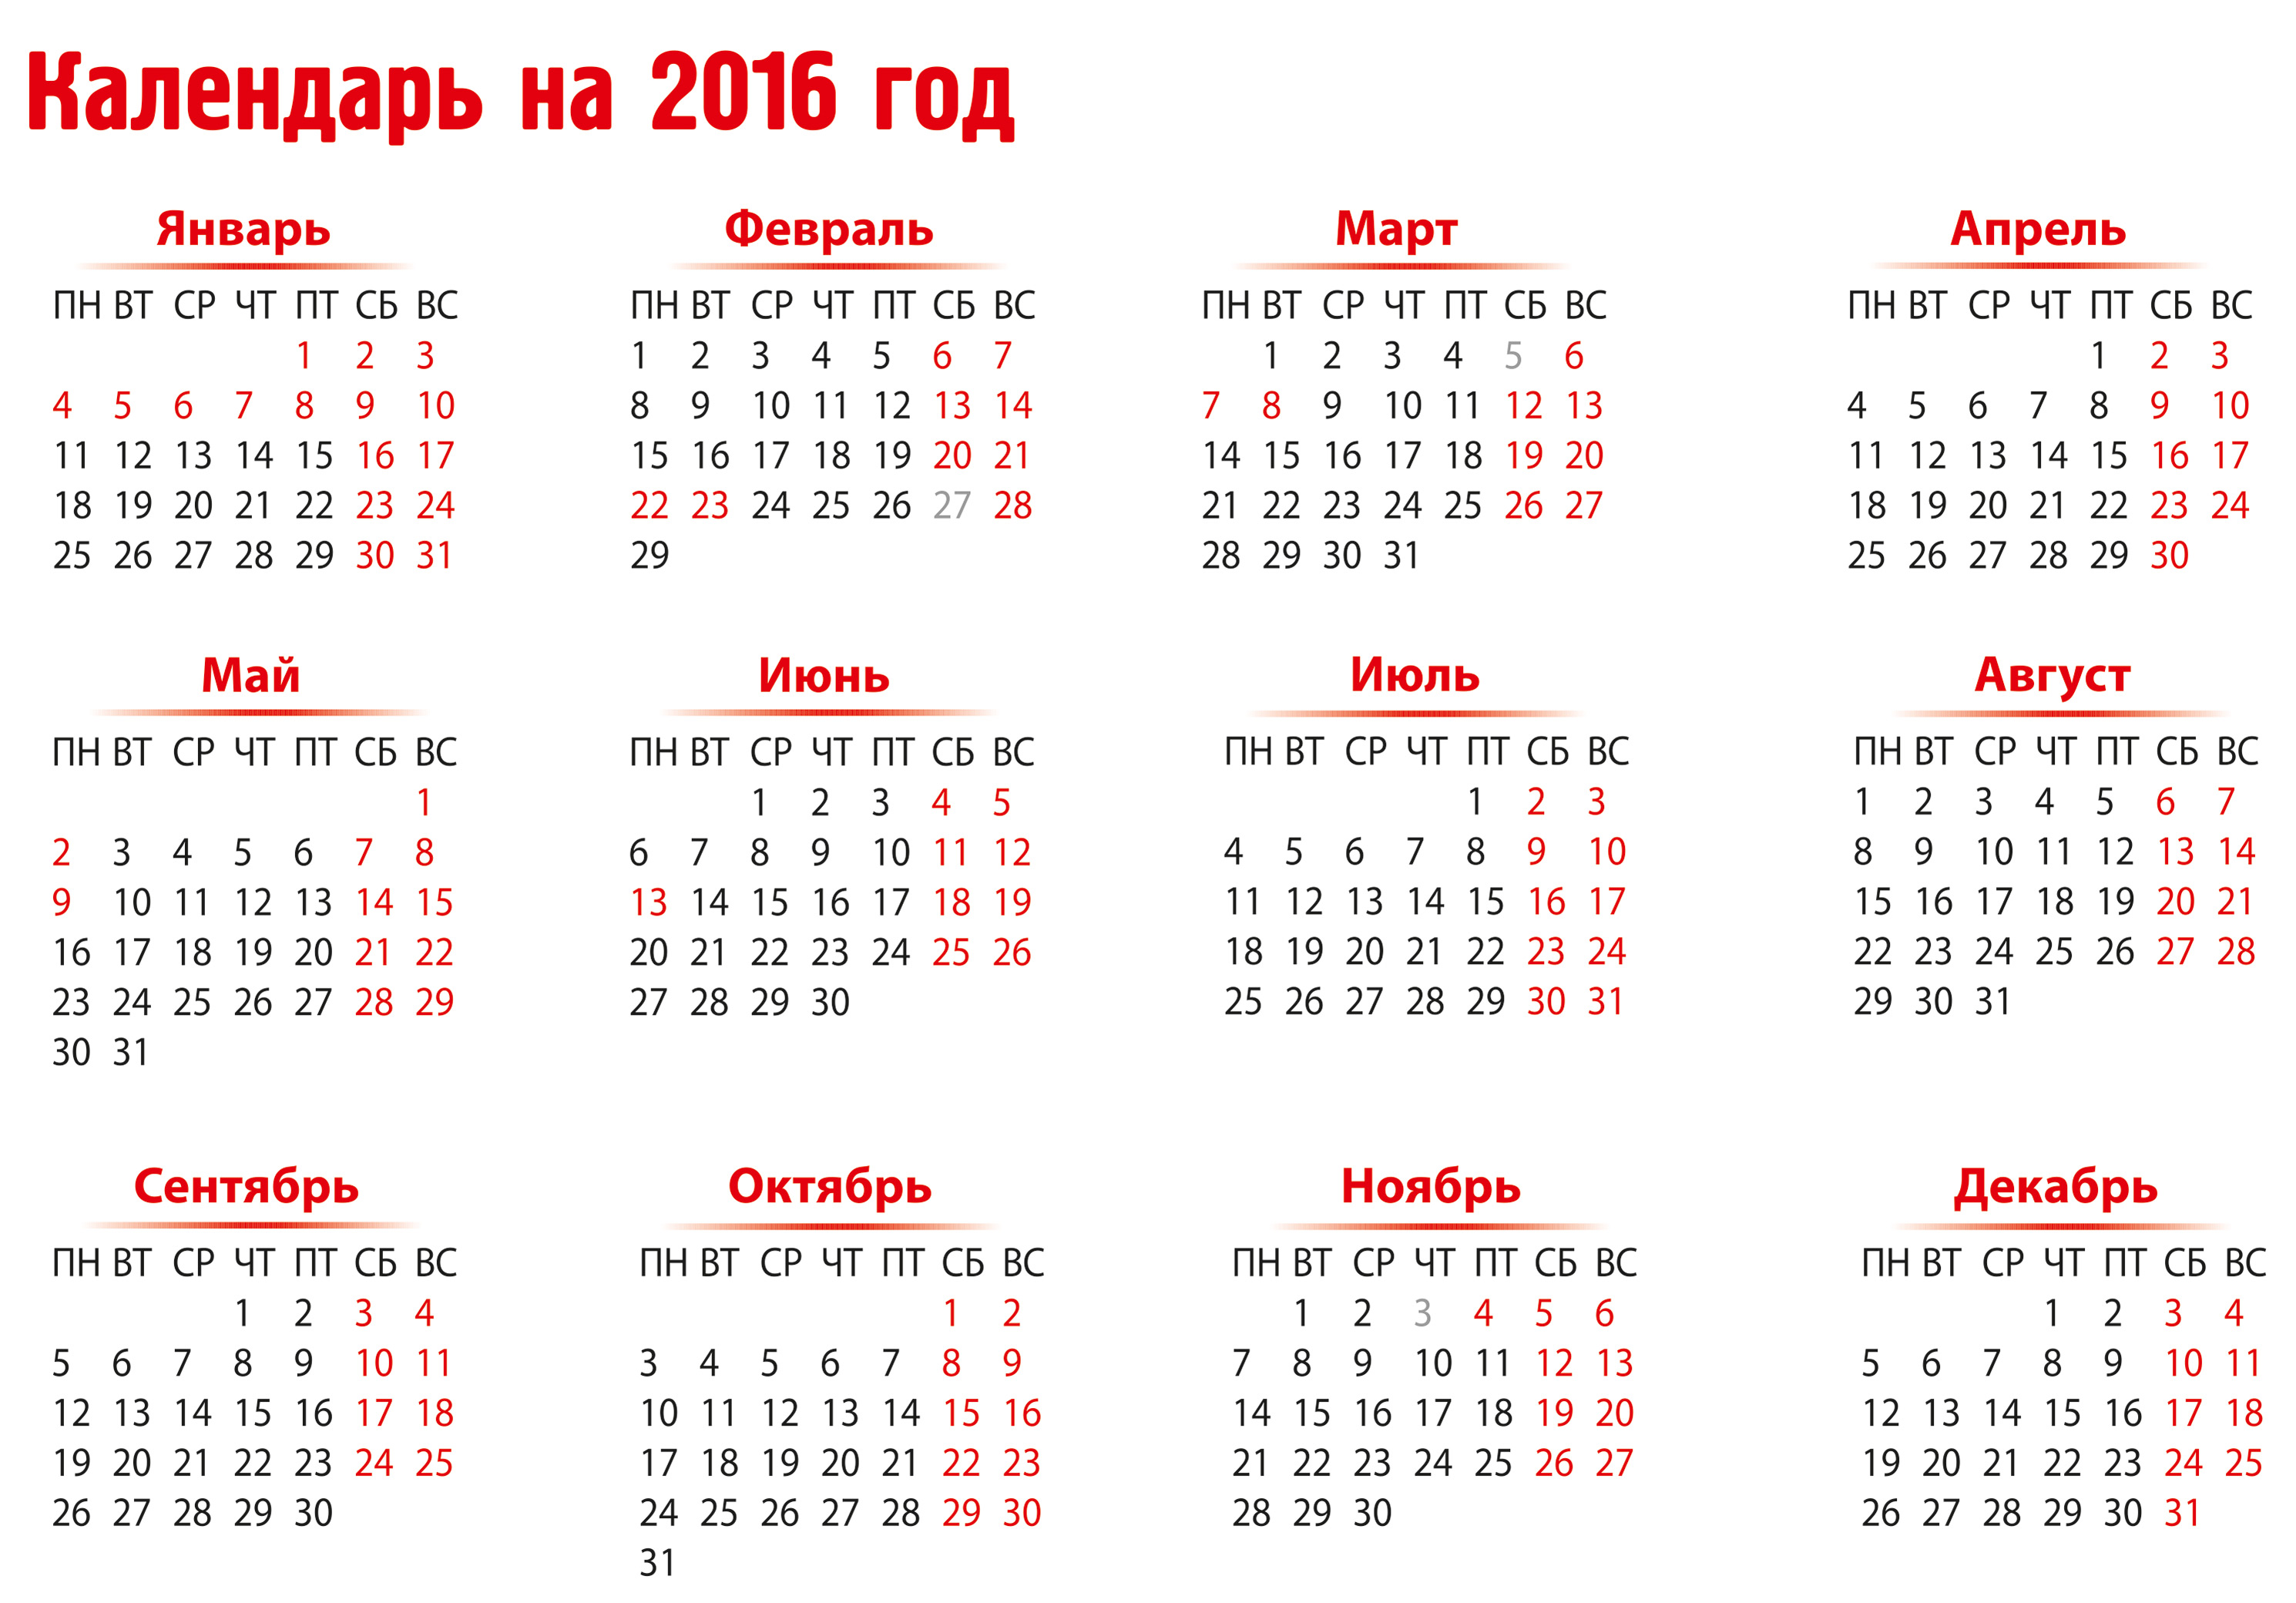 20 февраля 2017 год. Календарь 2016 года. Календарь 2016 года по месяцам. Праздники в календаре 2016 года. Календарь на 2016 год с праздниками и выходными.